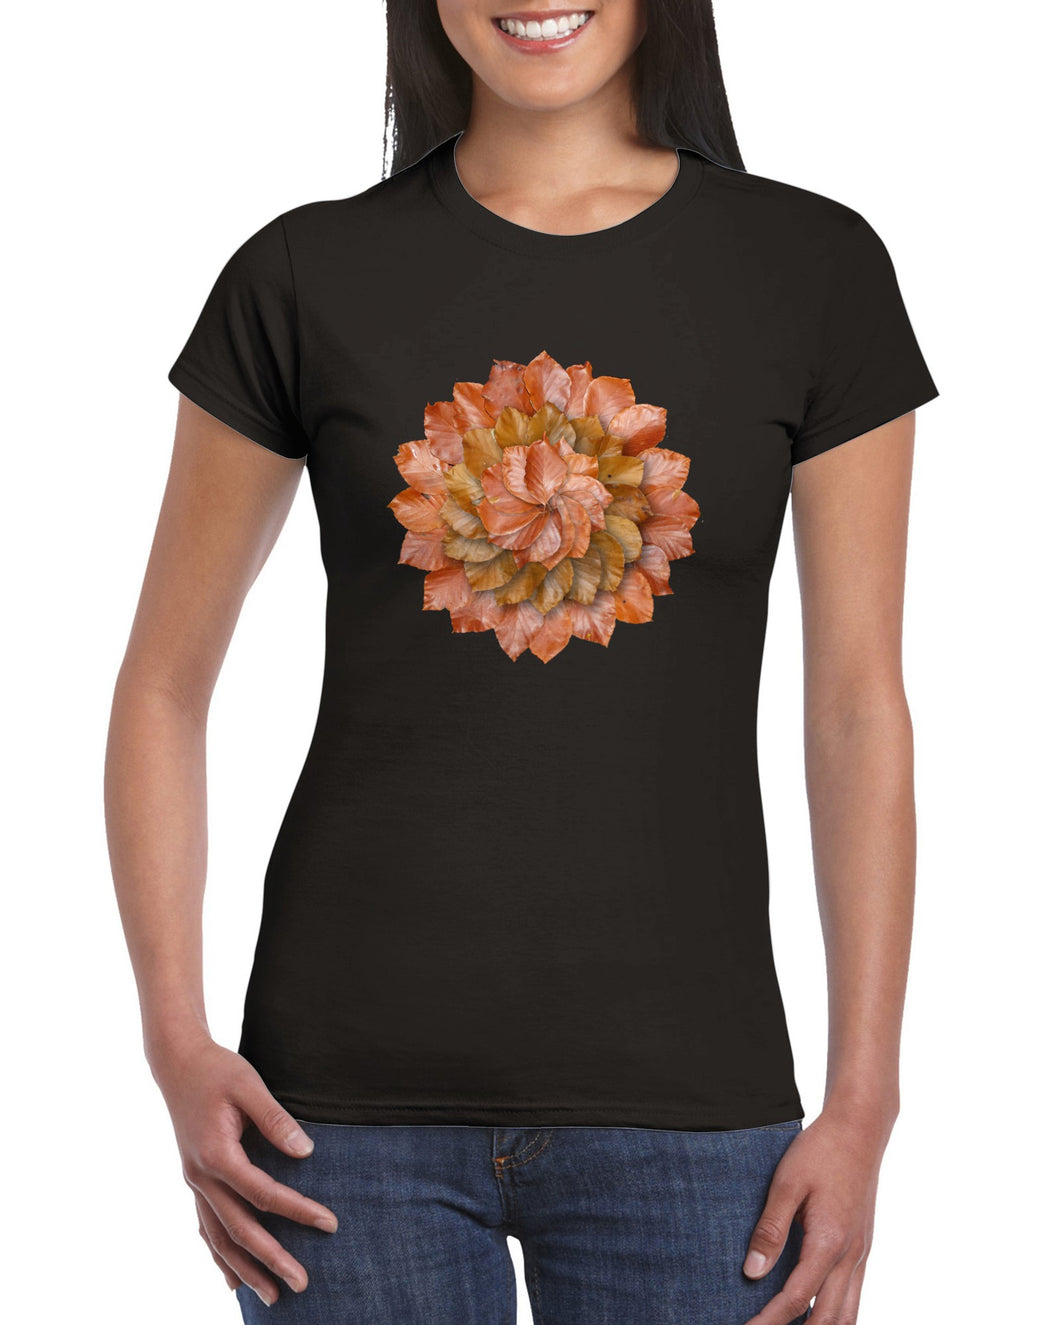 Beech Autumn Leaves - Womens T-shirt